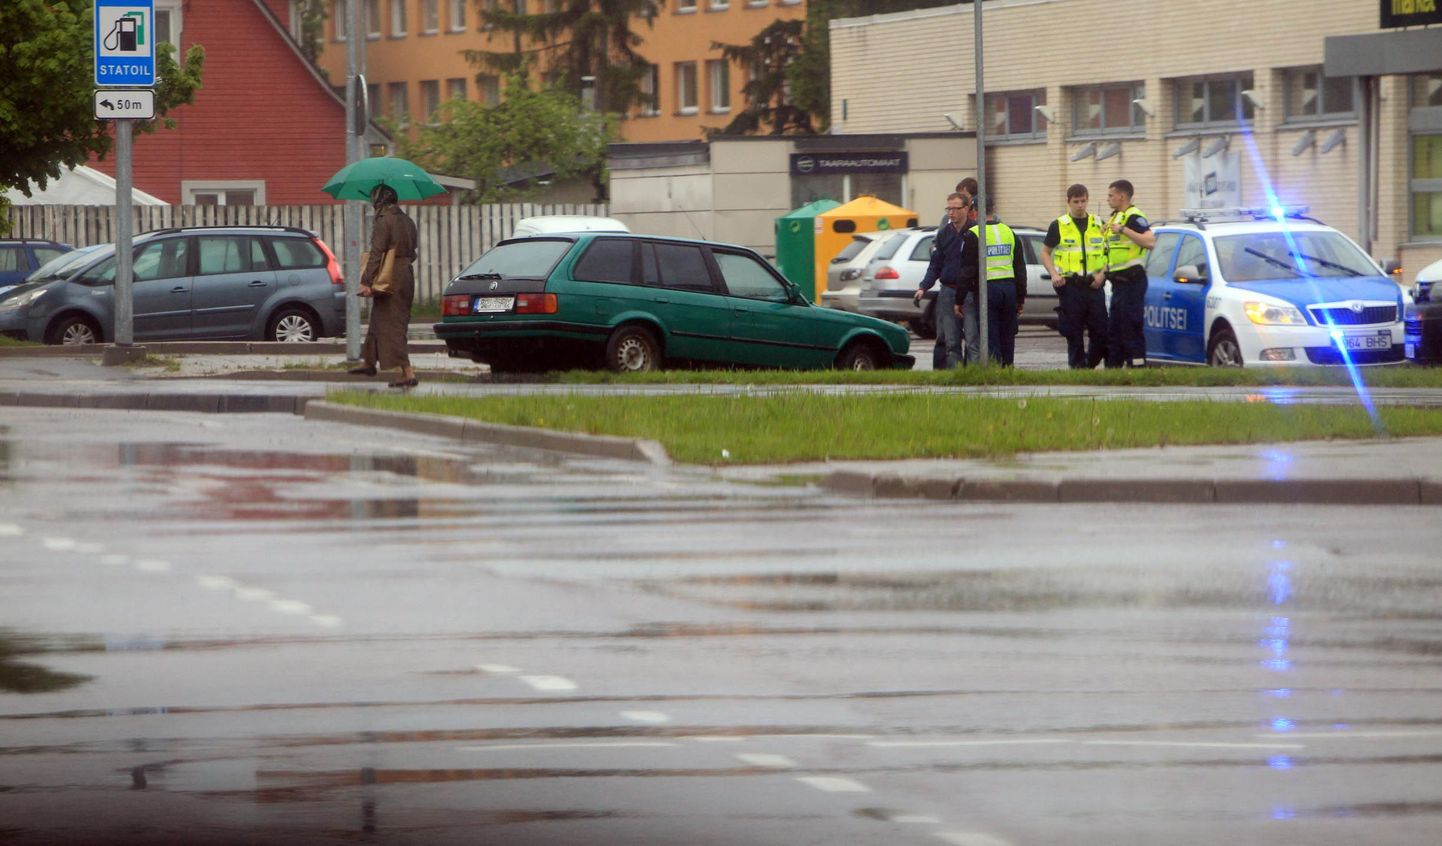 Liiklusõnnetus Tartus Aardla ristmikul, kus BMW juht võttis libedal asfaldil kurvi liiga uljalt ning paiskus teelt välja.